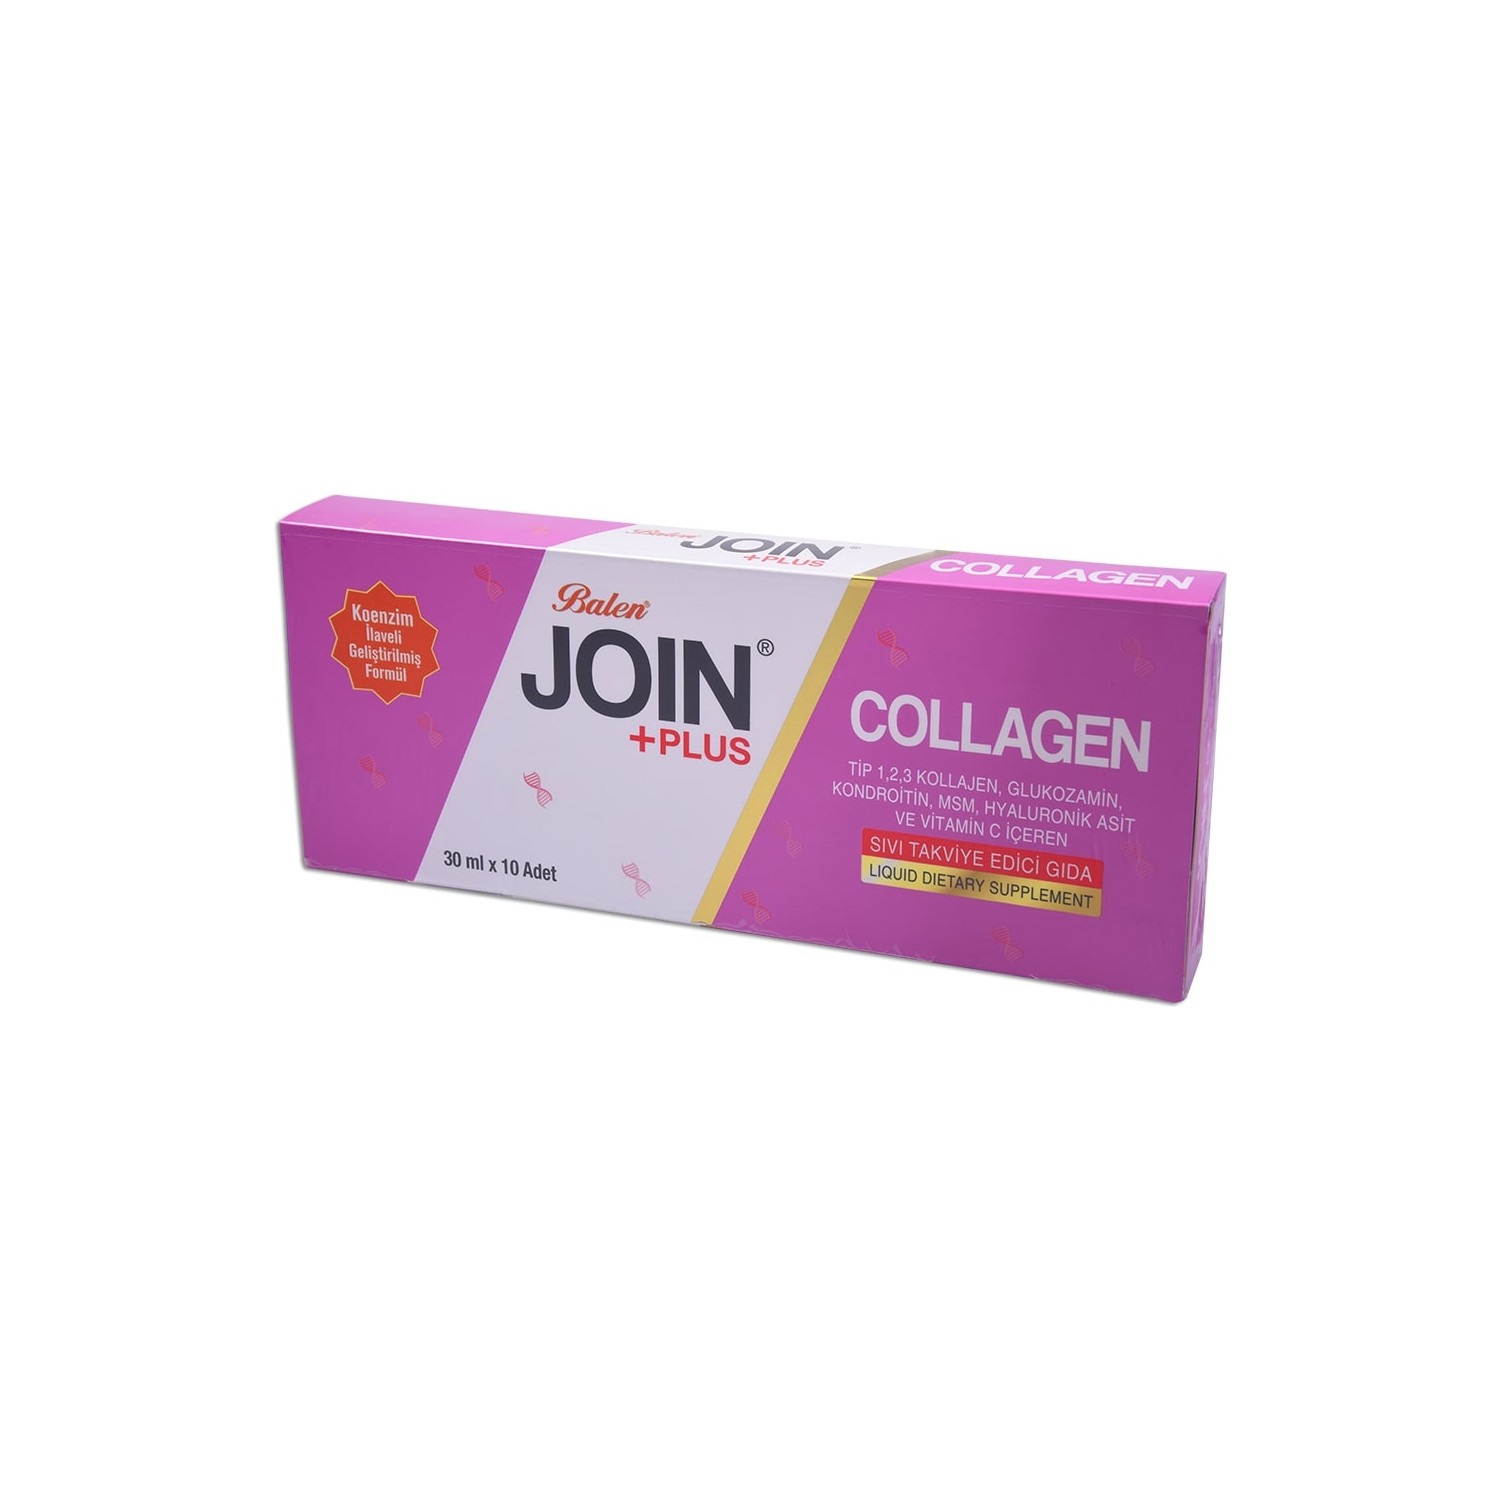 Активная добавка Balen Join и Plus Collagen, 10 капсул, 30 мл. 1 win collagen хондроитин глюкозамин вкус манго 30 саше стиков